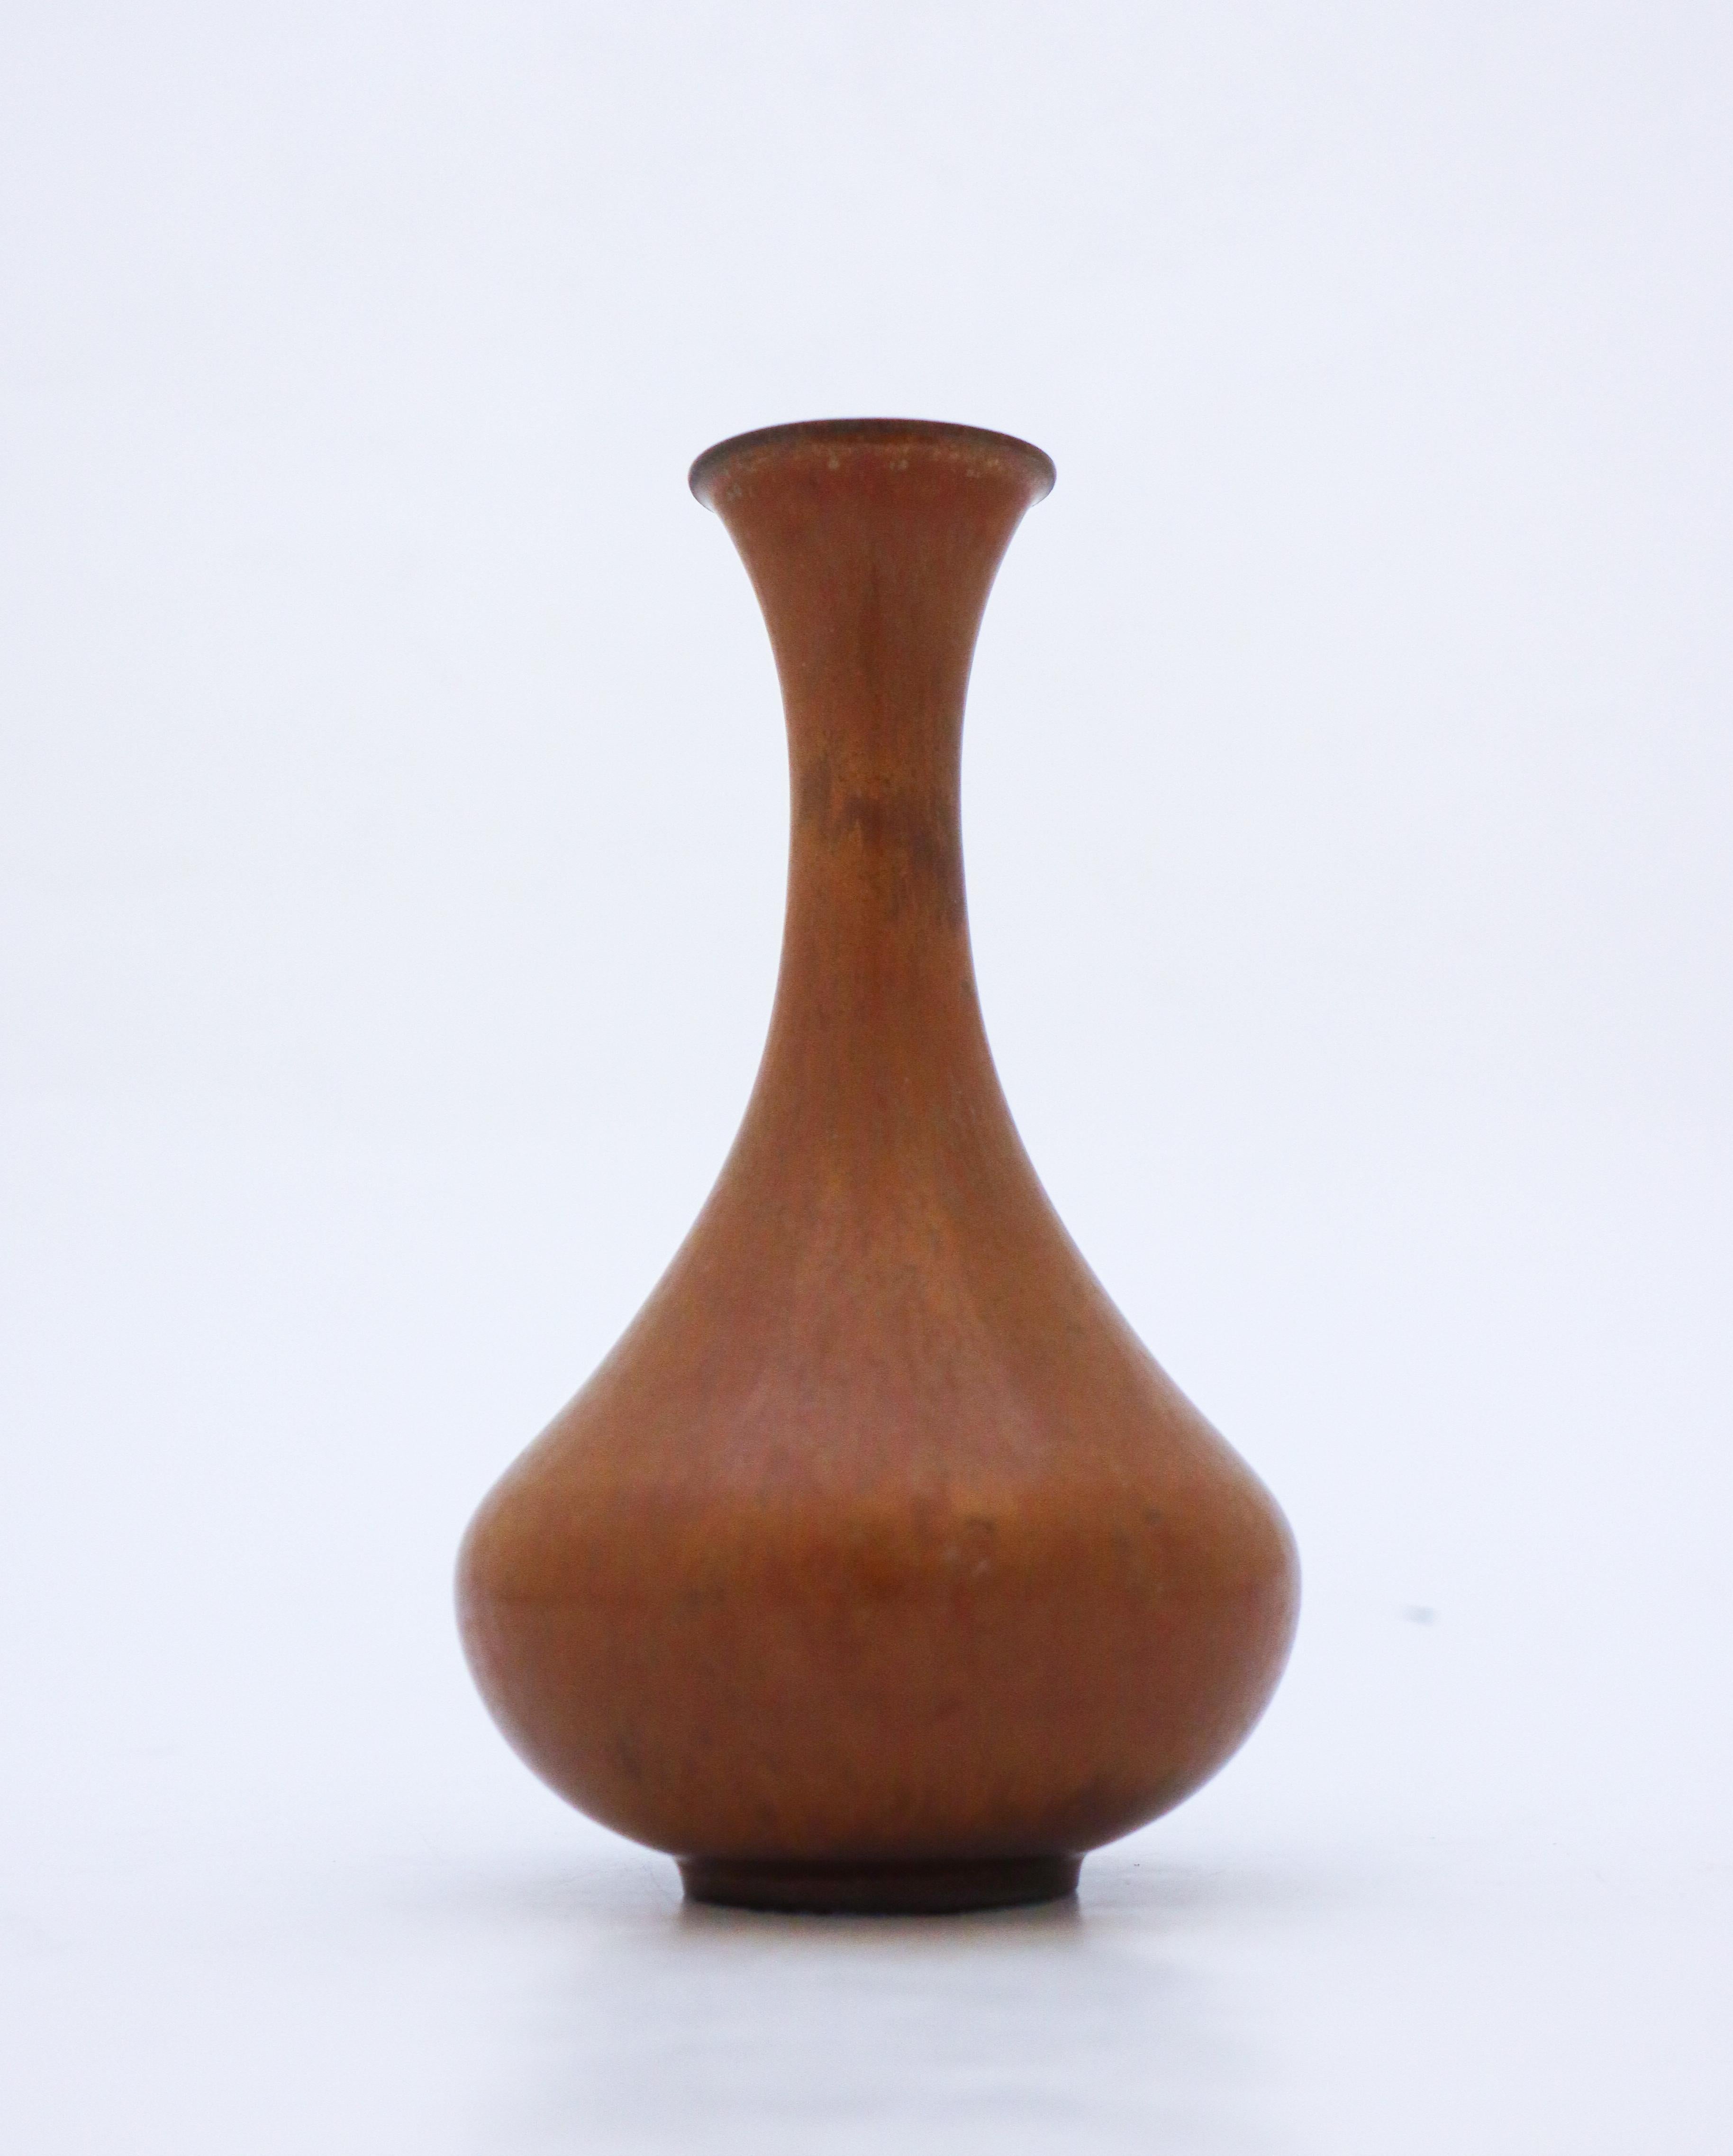 Vase brun conçu par Gunnar Design/One chez Rörstrand, d'une hauteur de 16,5 cm (6,6 po). Il est en parfait état et marqué comme étant de qualité 1:st. 

Gunnar Nylund est né à Paris en 1904 de parents sculpteurs et designers. Il a donc très vite